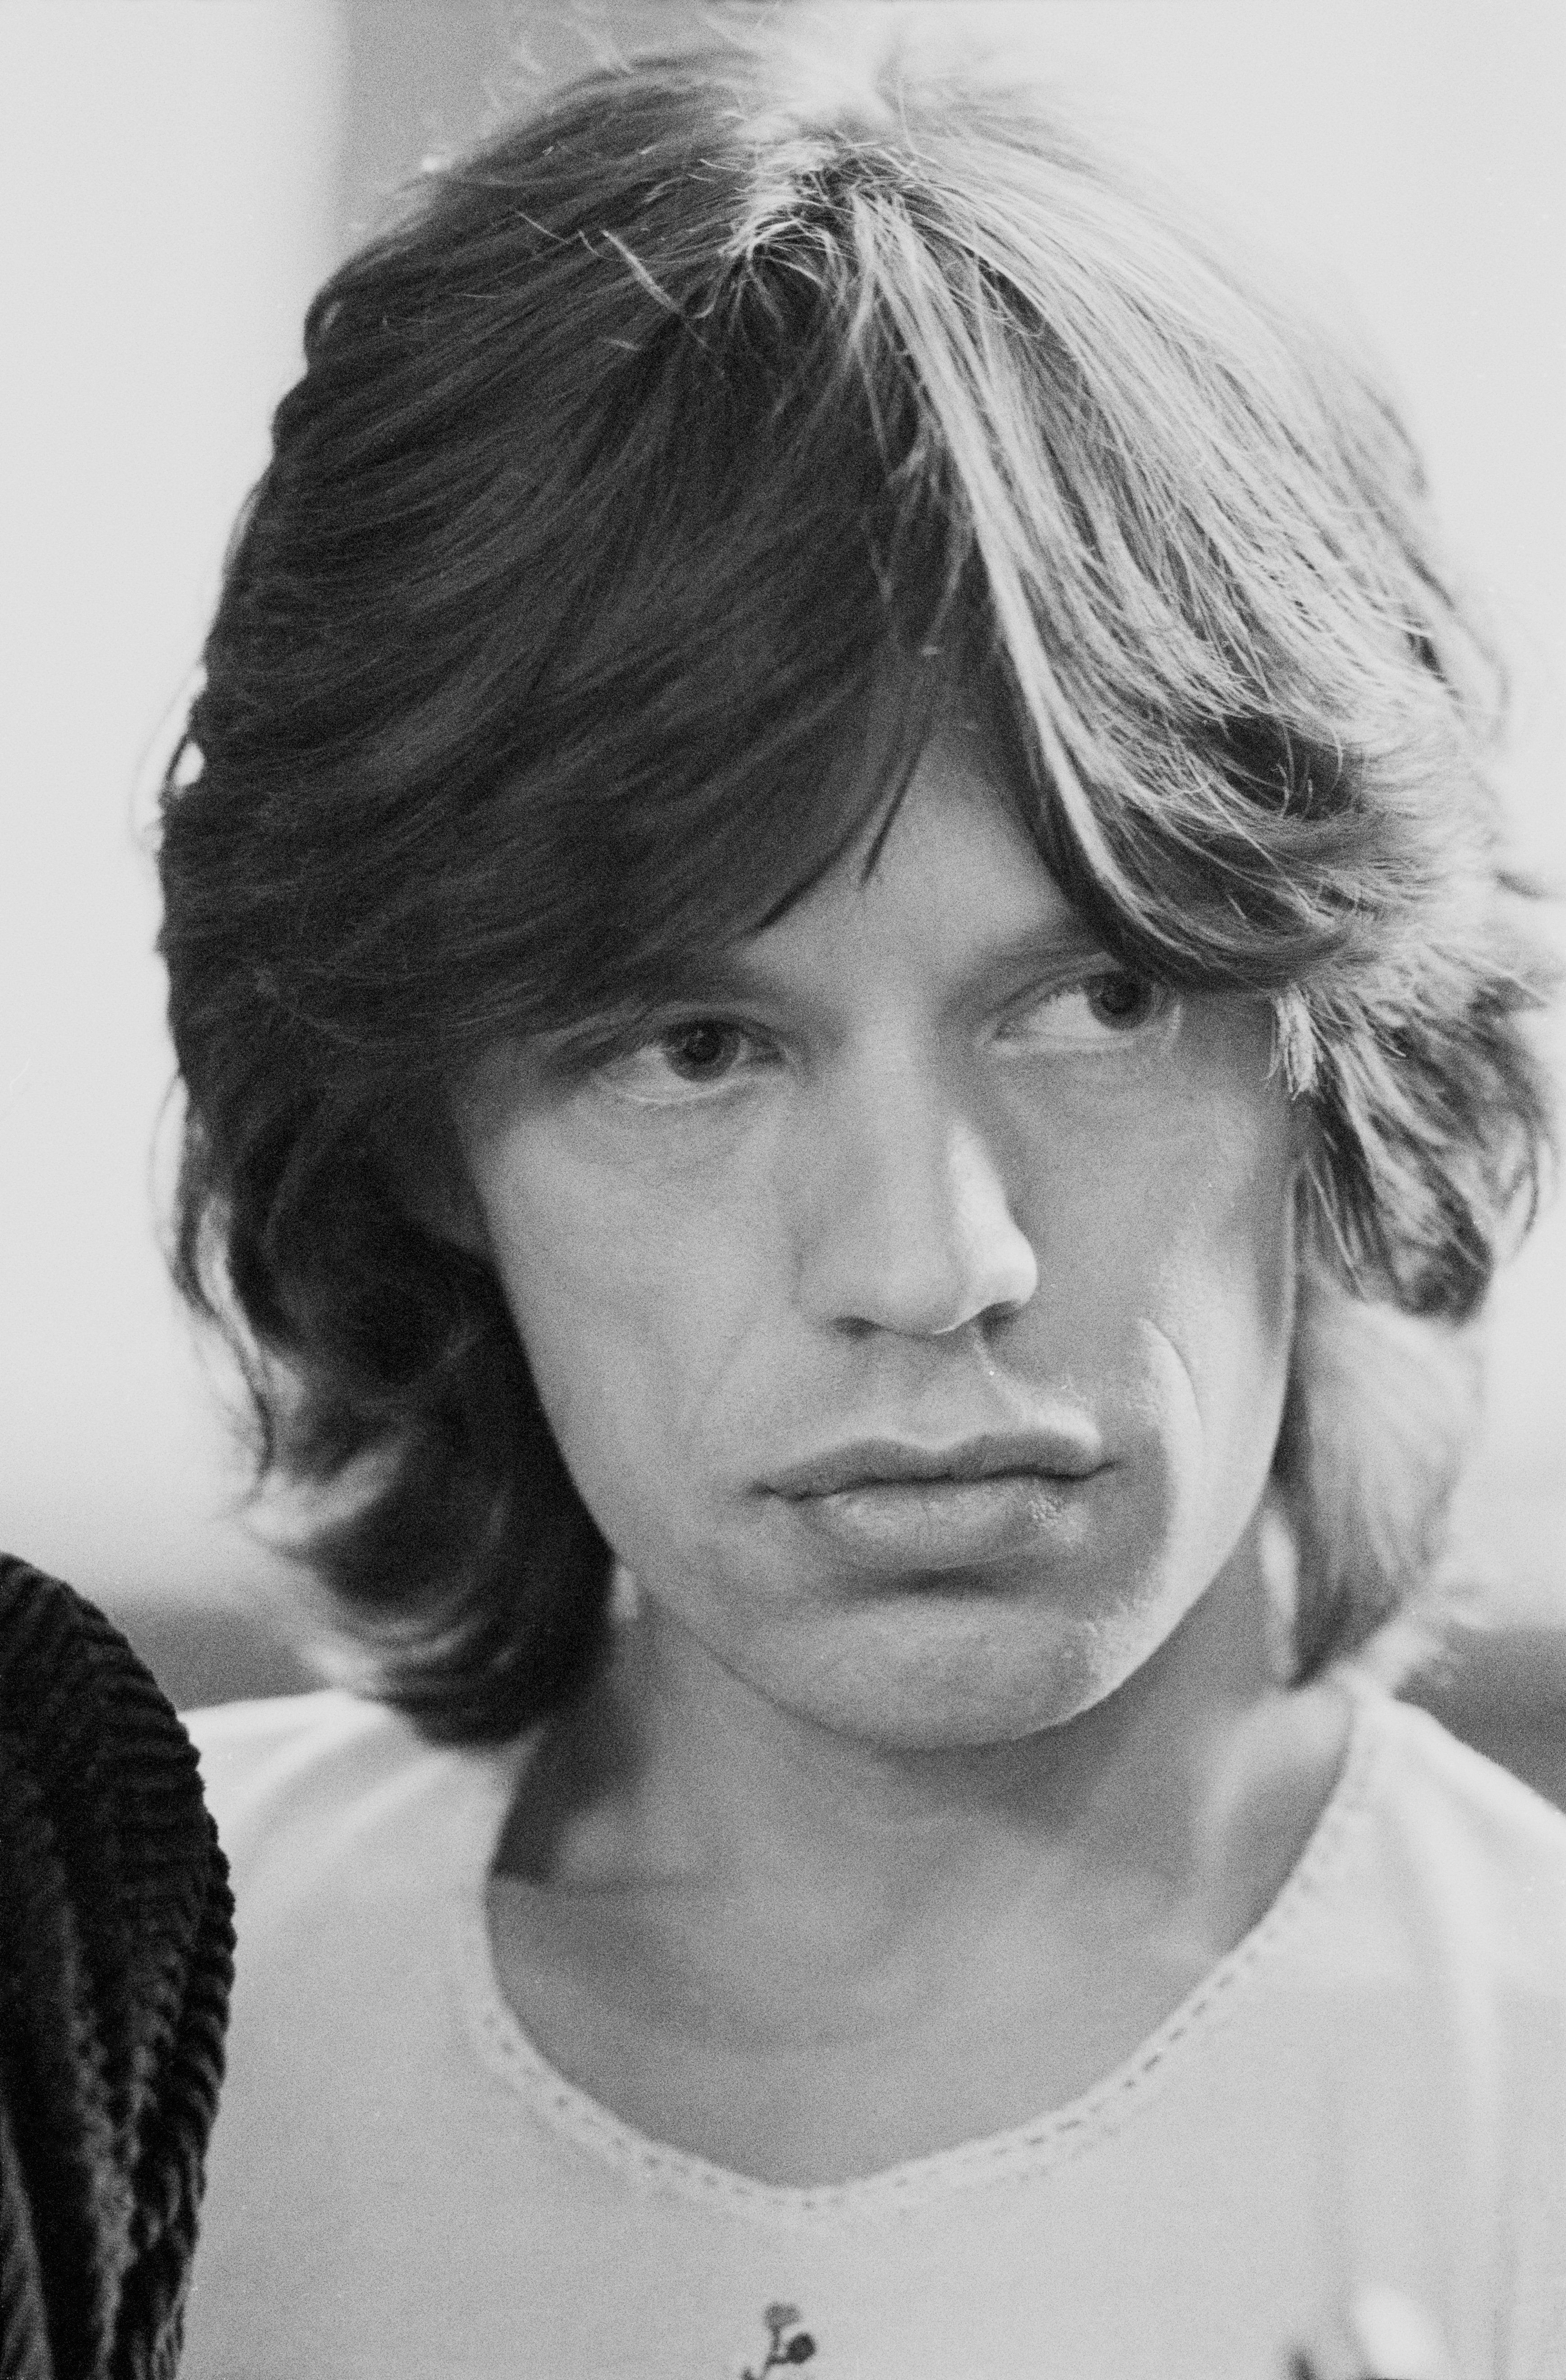 Le chanteur anglais Mick Jagger à Londres, 1972. | Source: Getty Images